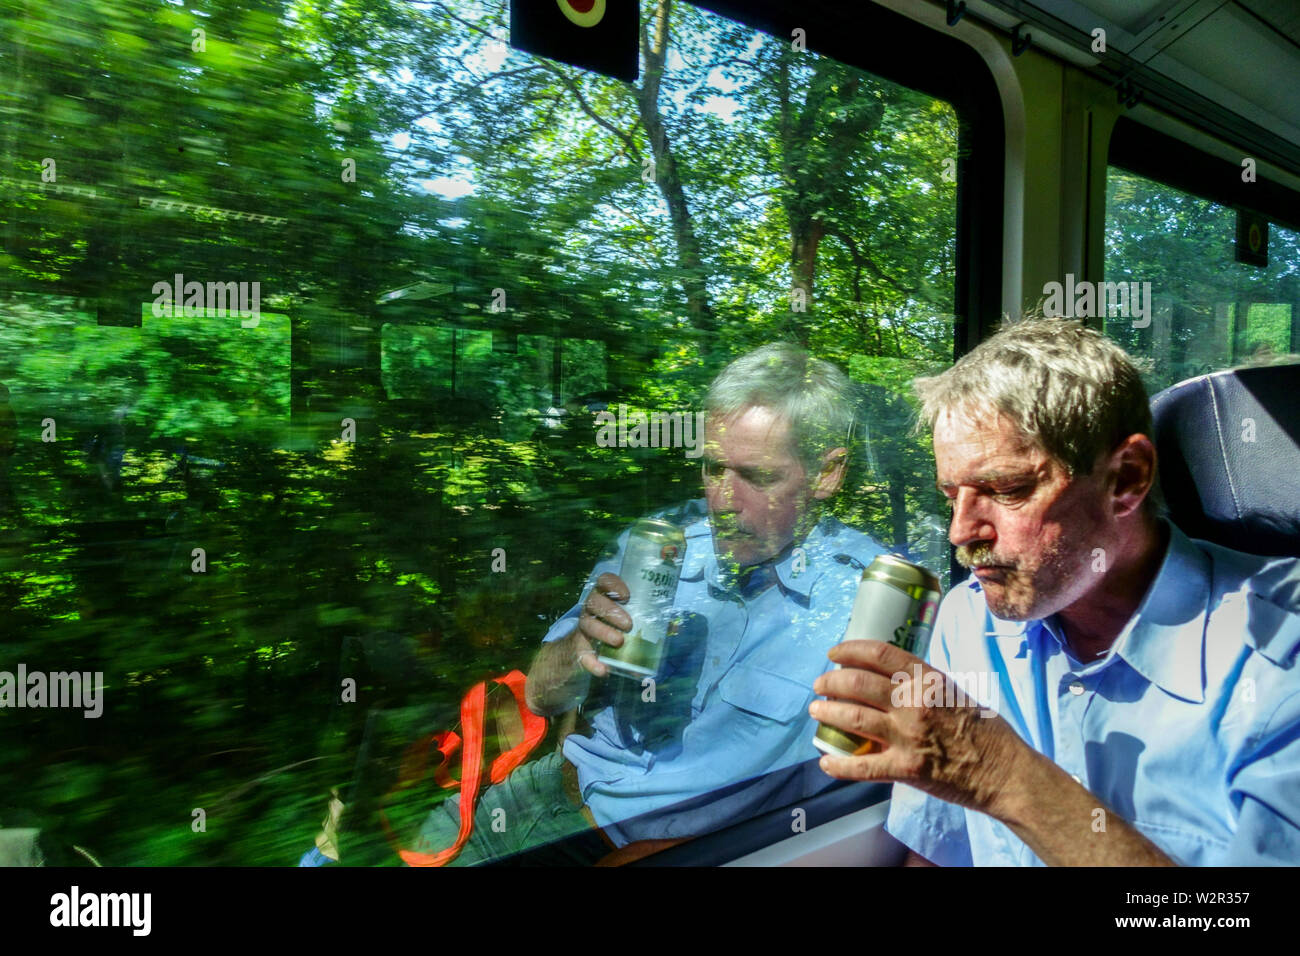 Finestrino del treno, Un passeggero sul treno sta bevendo birra da una lattina, treno regionale Germania Europa treno turistico tedesco Svizzera sassone treno natura Foto Stock